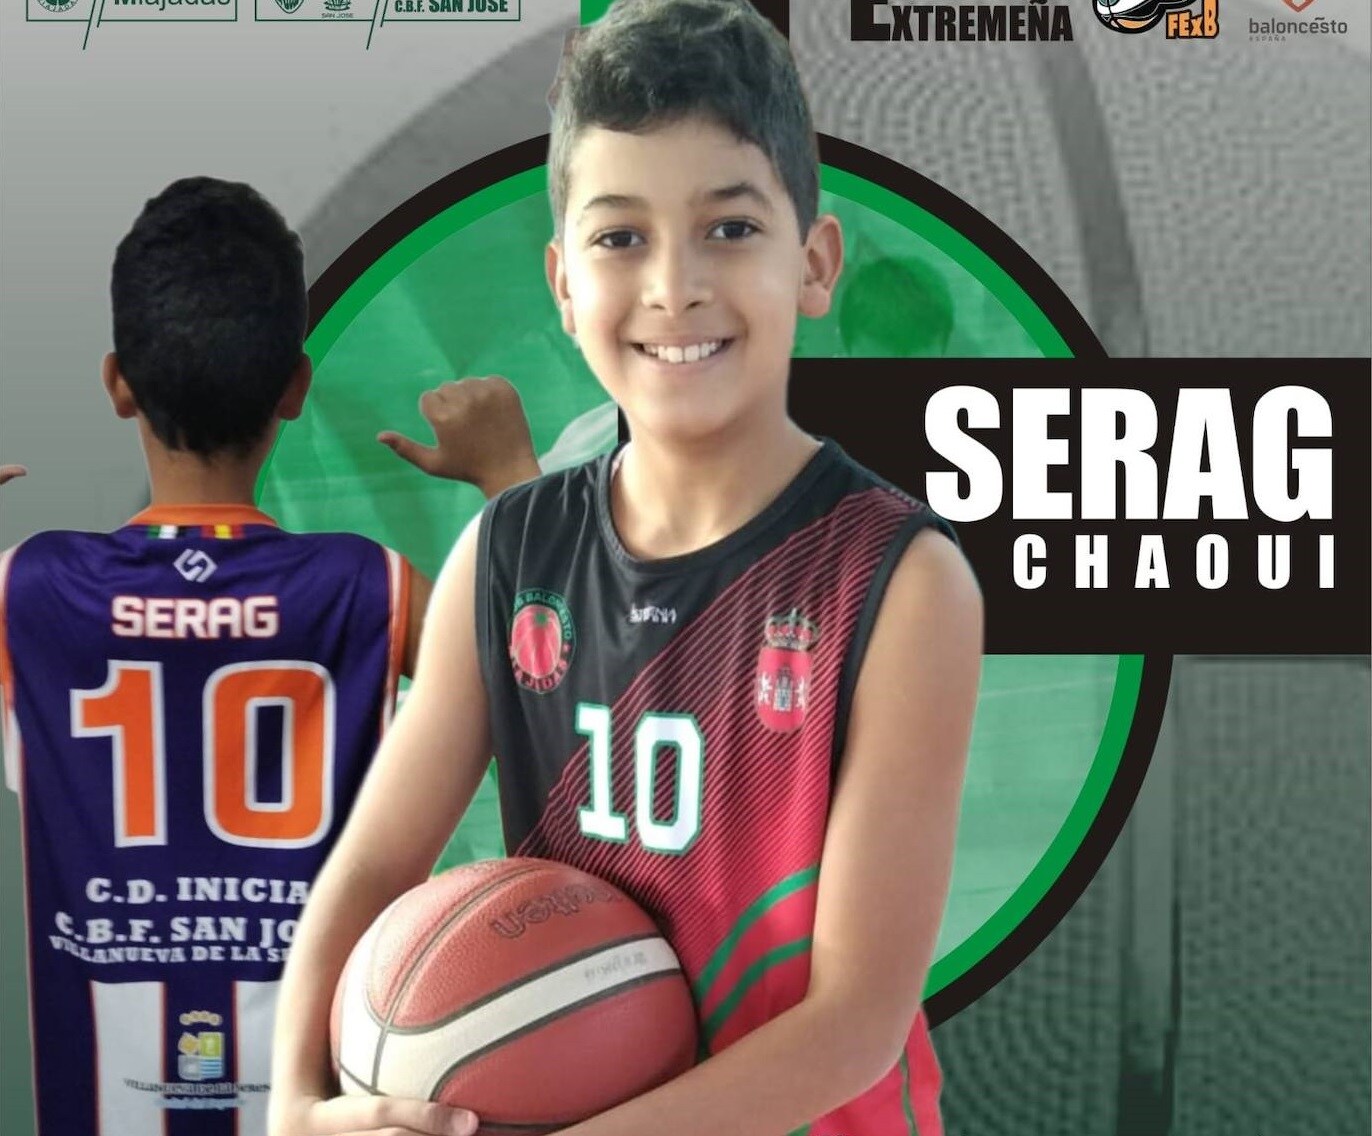 El miajadeño Serag Chaoui formará parte de la Selección Extremeña Mini de Baloncesto